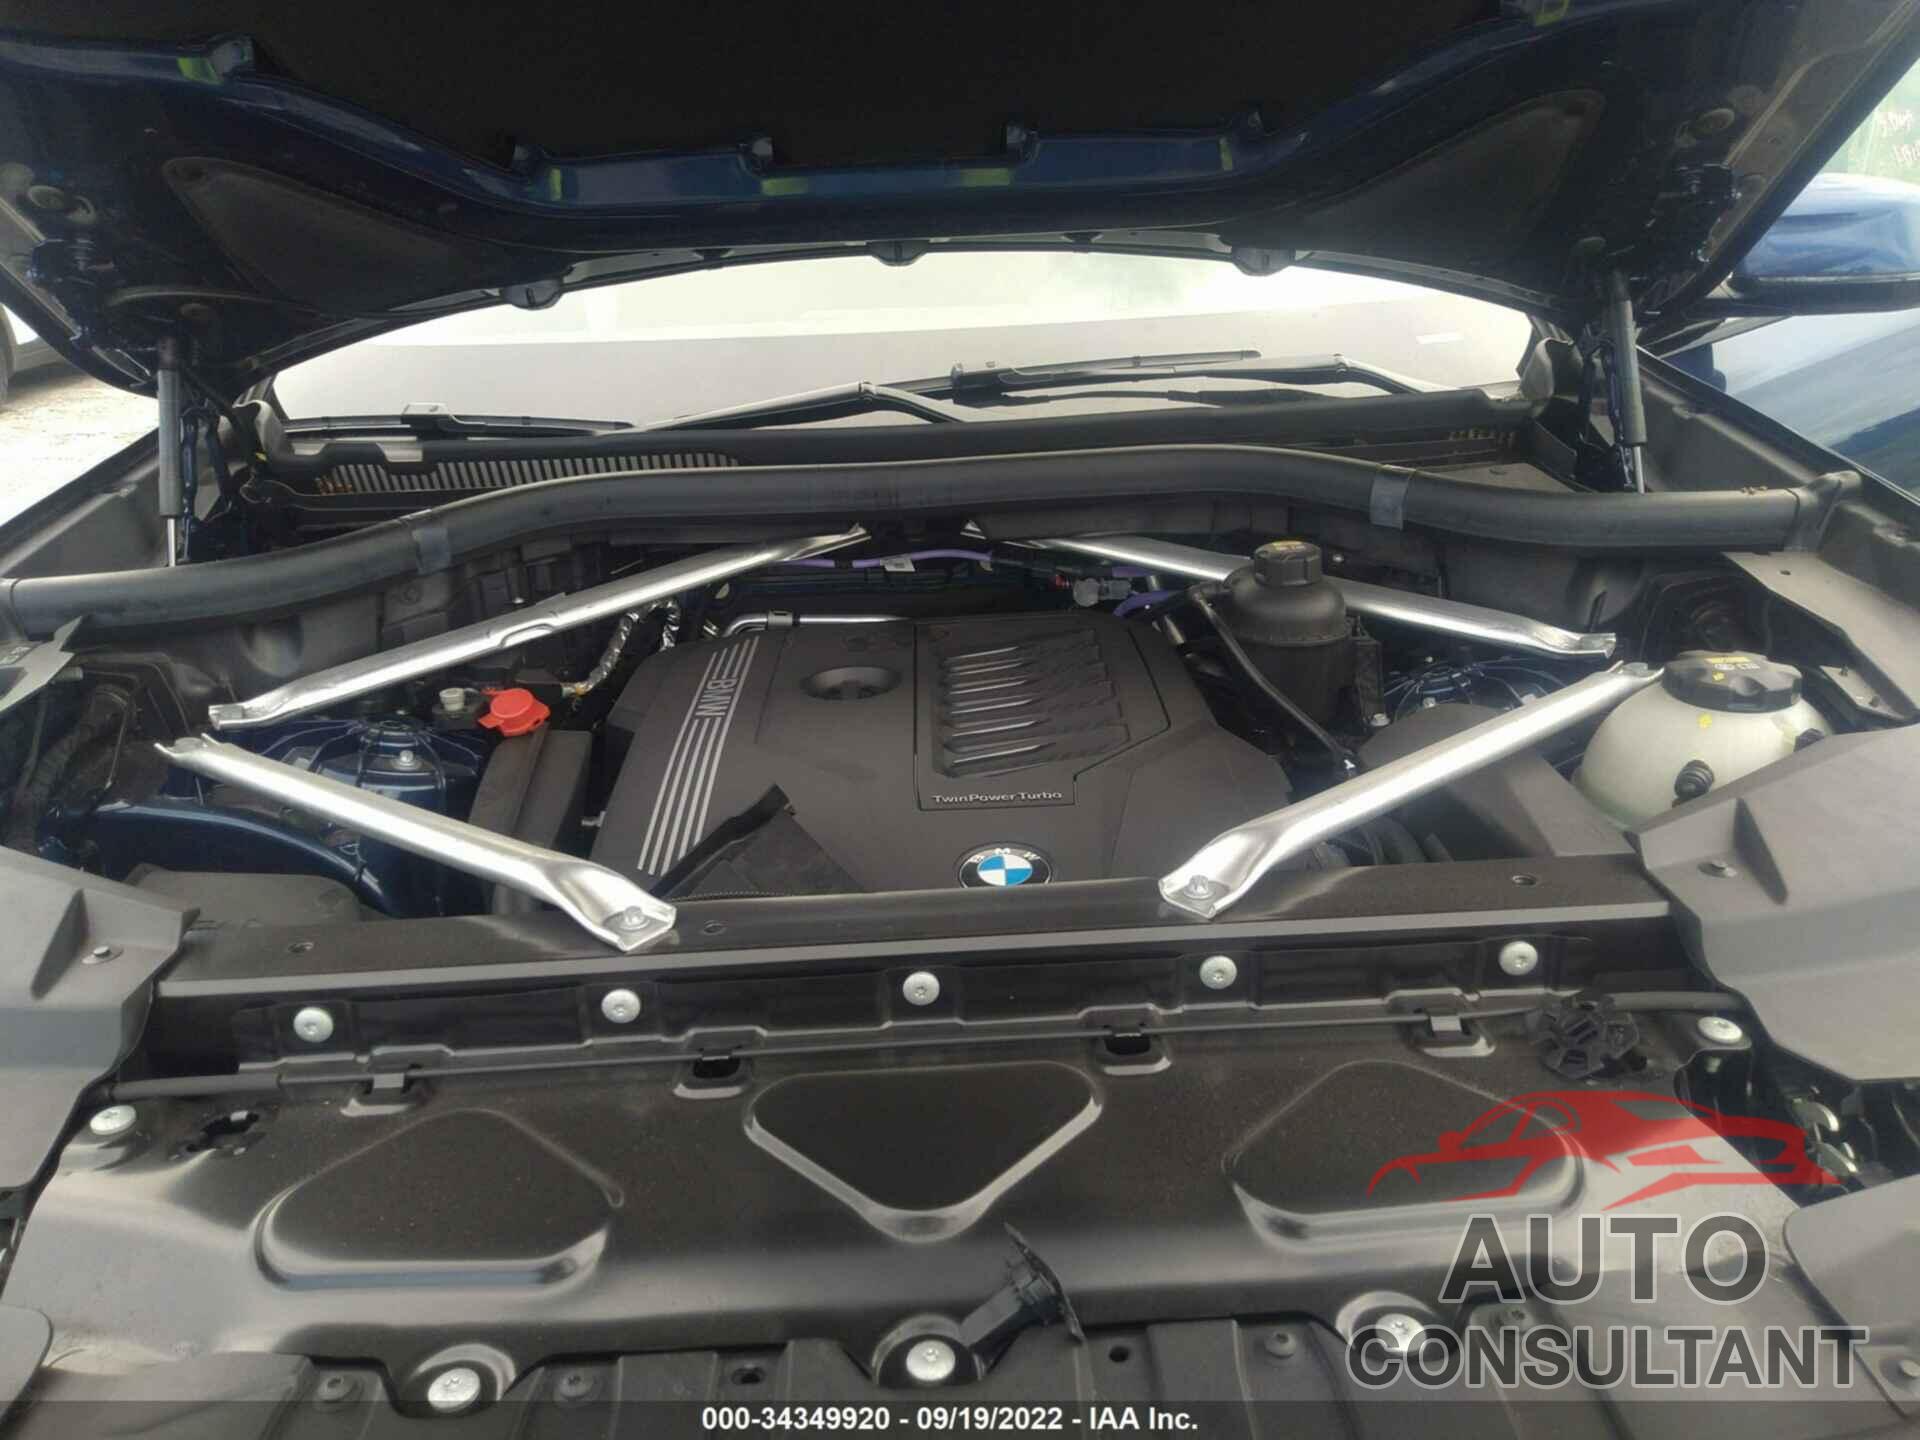 BMW X6 2022 - 5UXCY6C03N9K77974